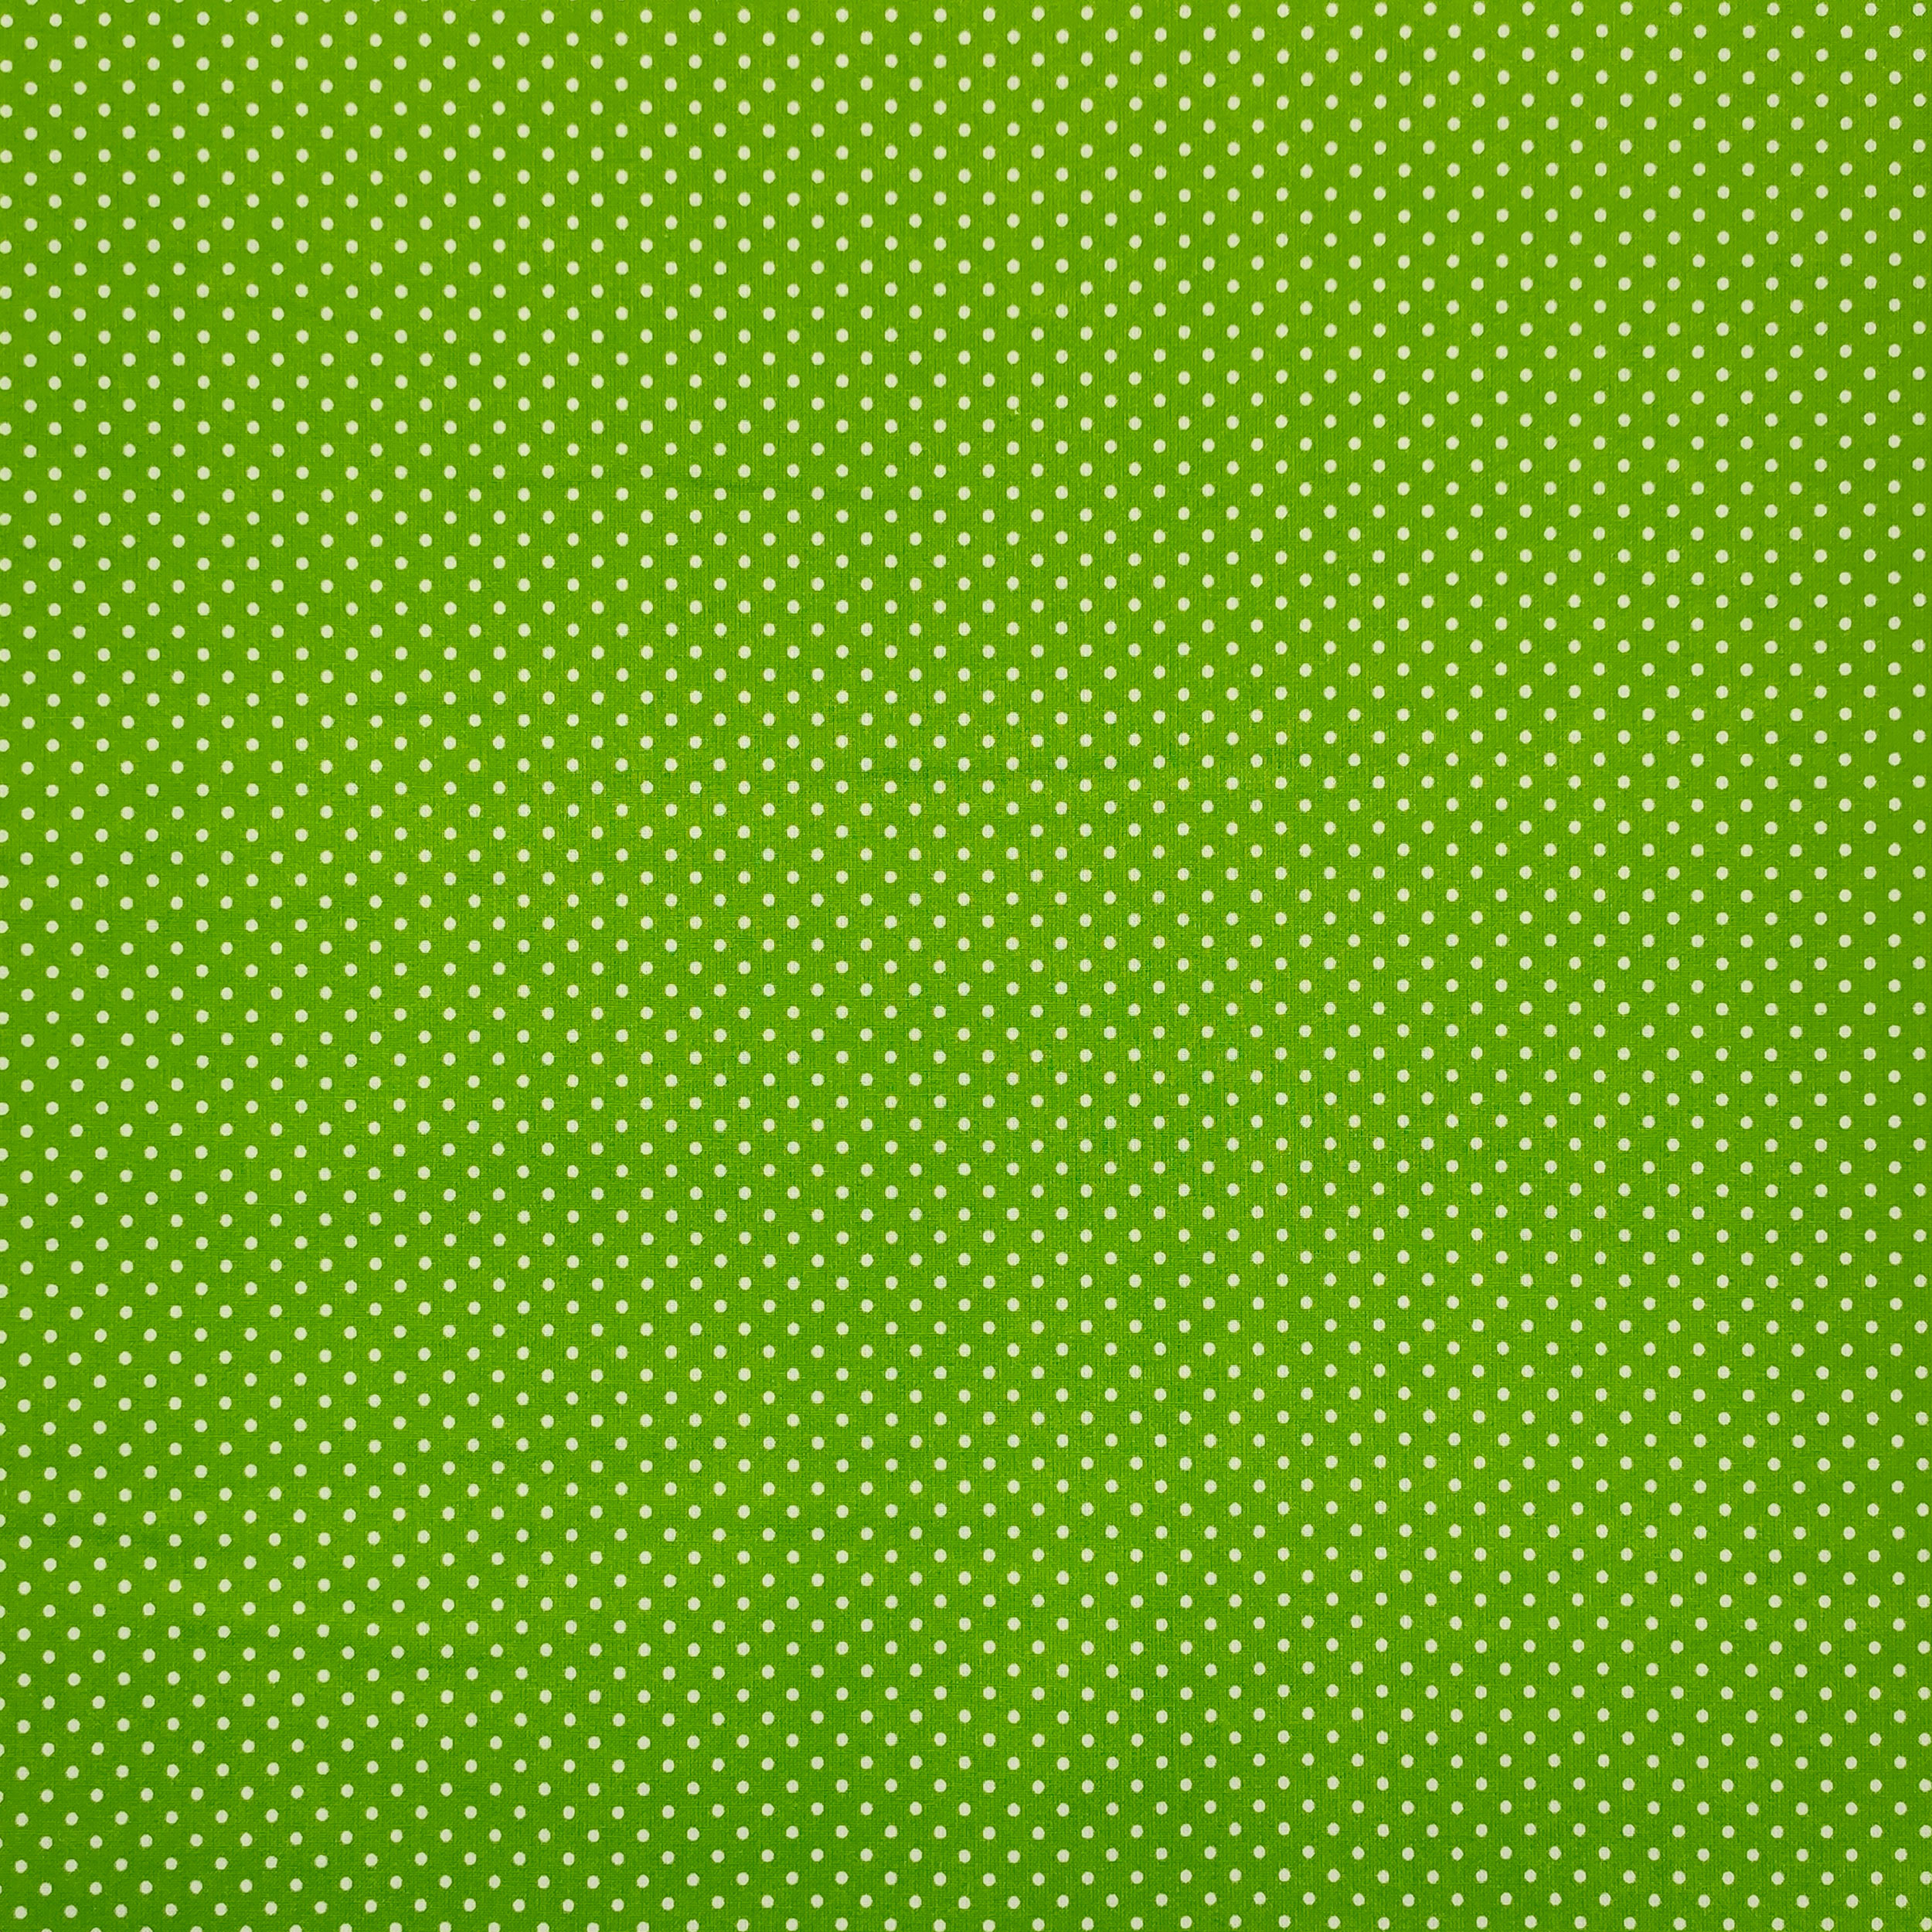 stoffa cotone pois piccoli sfondo verde